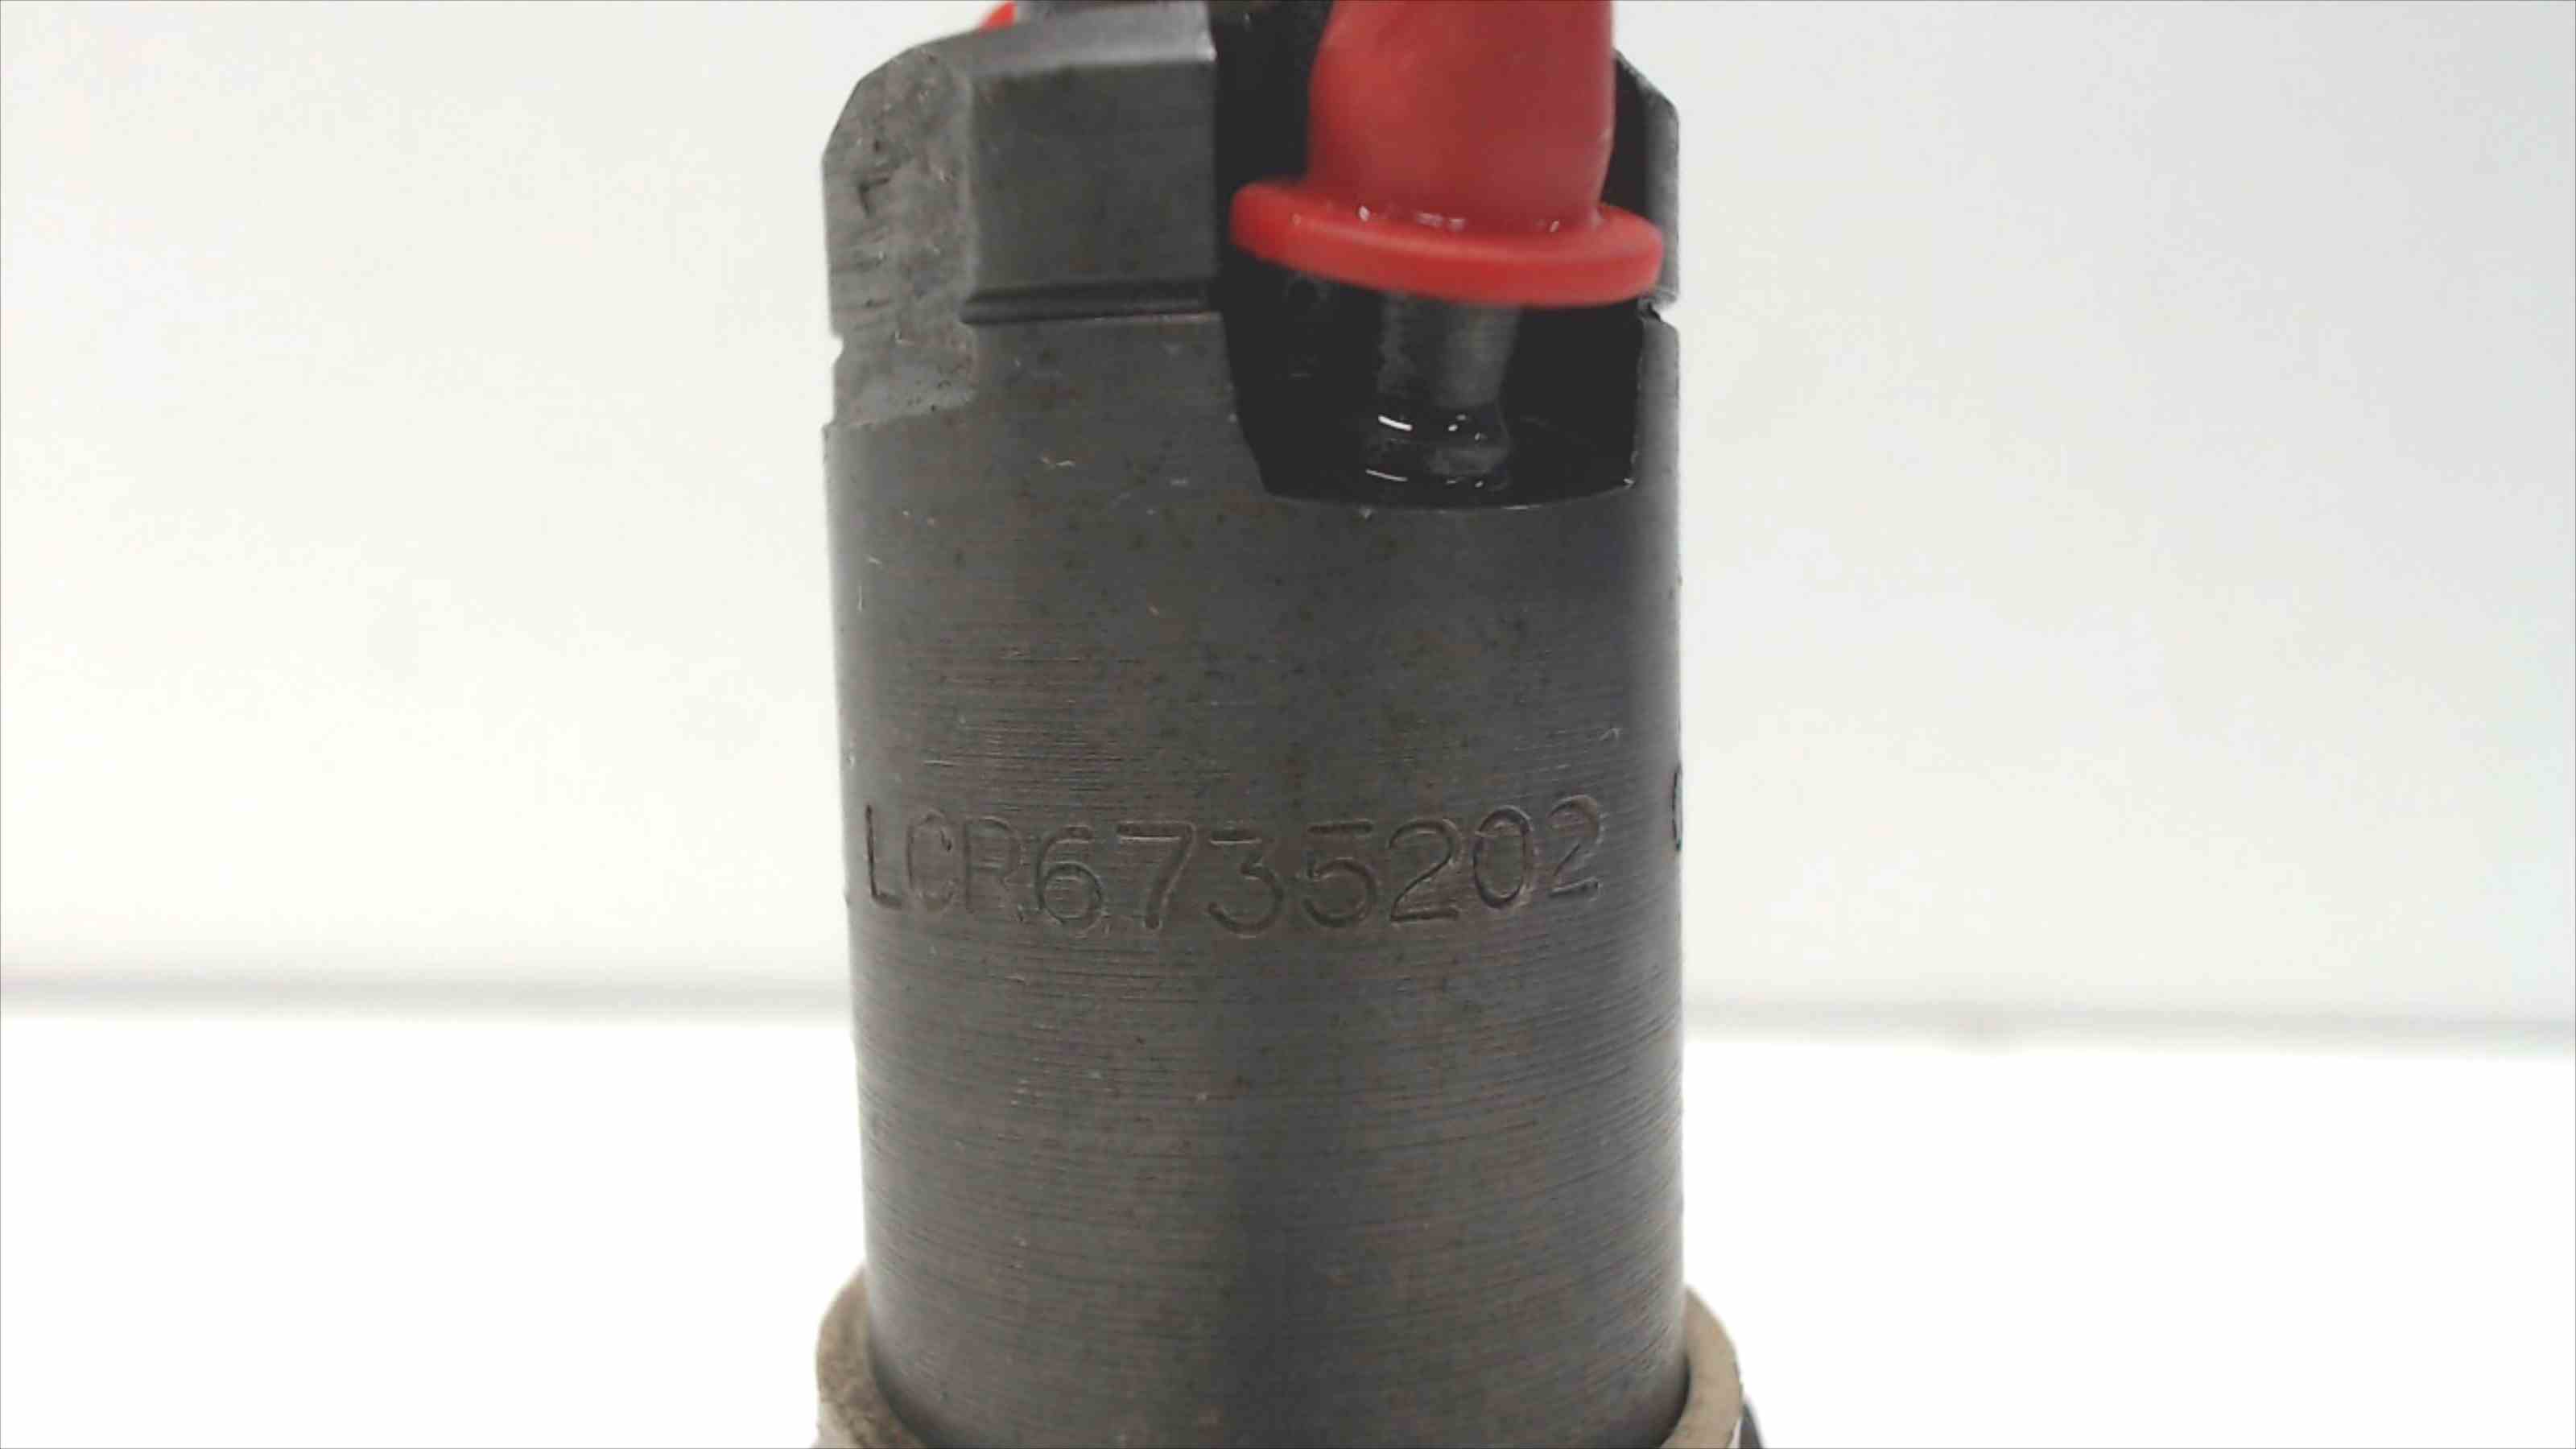 SUZUKI Vitara 1 generation (1988-2006) Fuel Injector LCR6735202 24689879